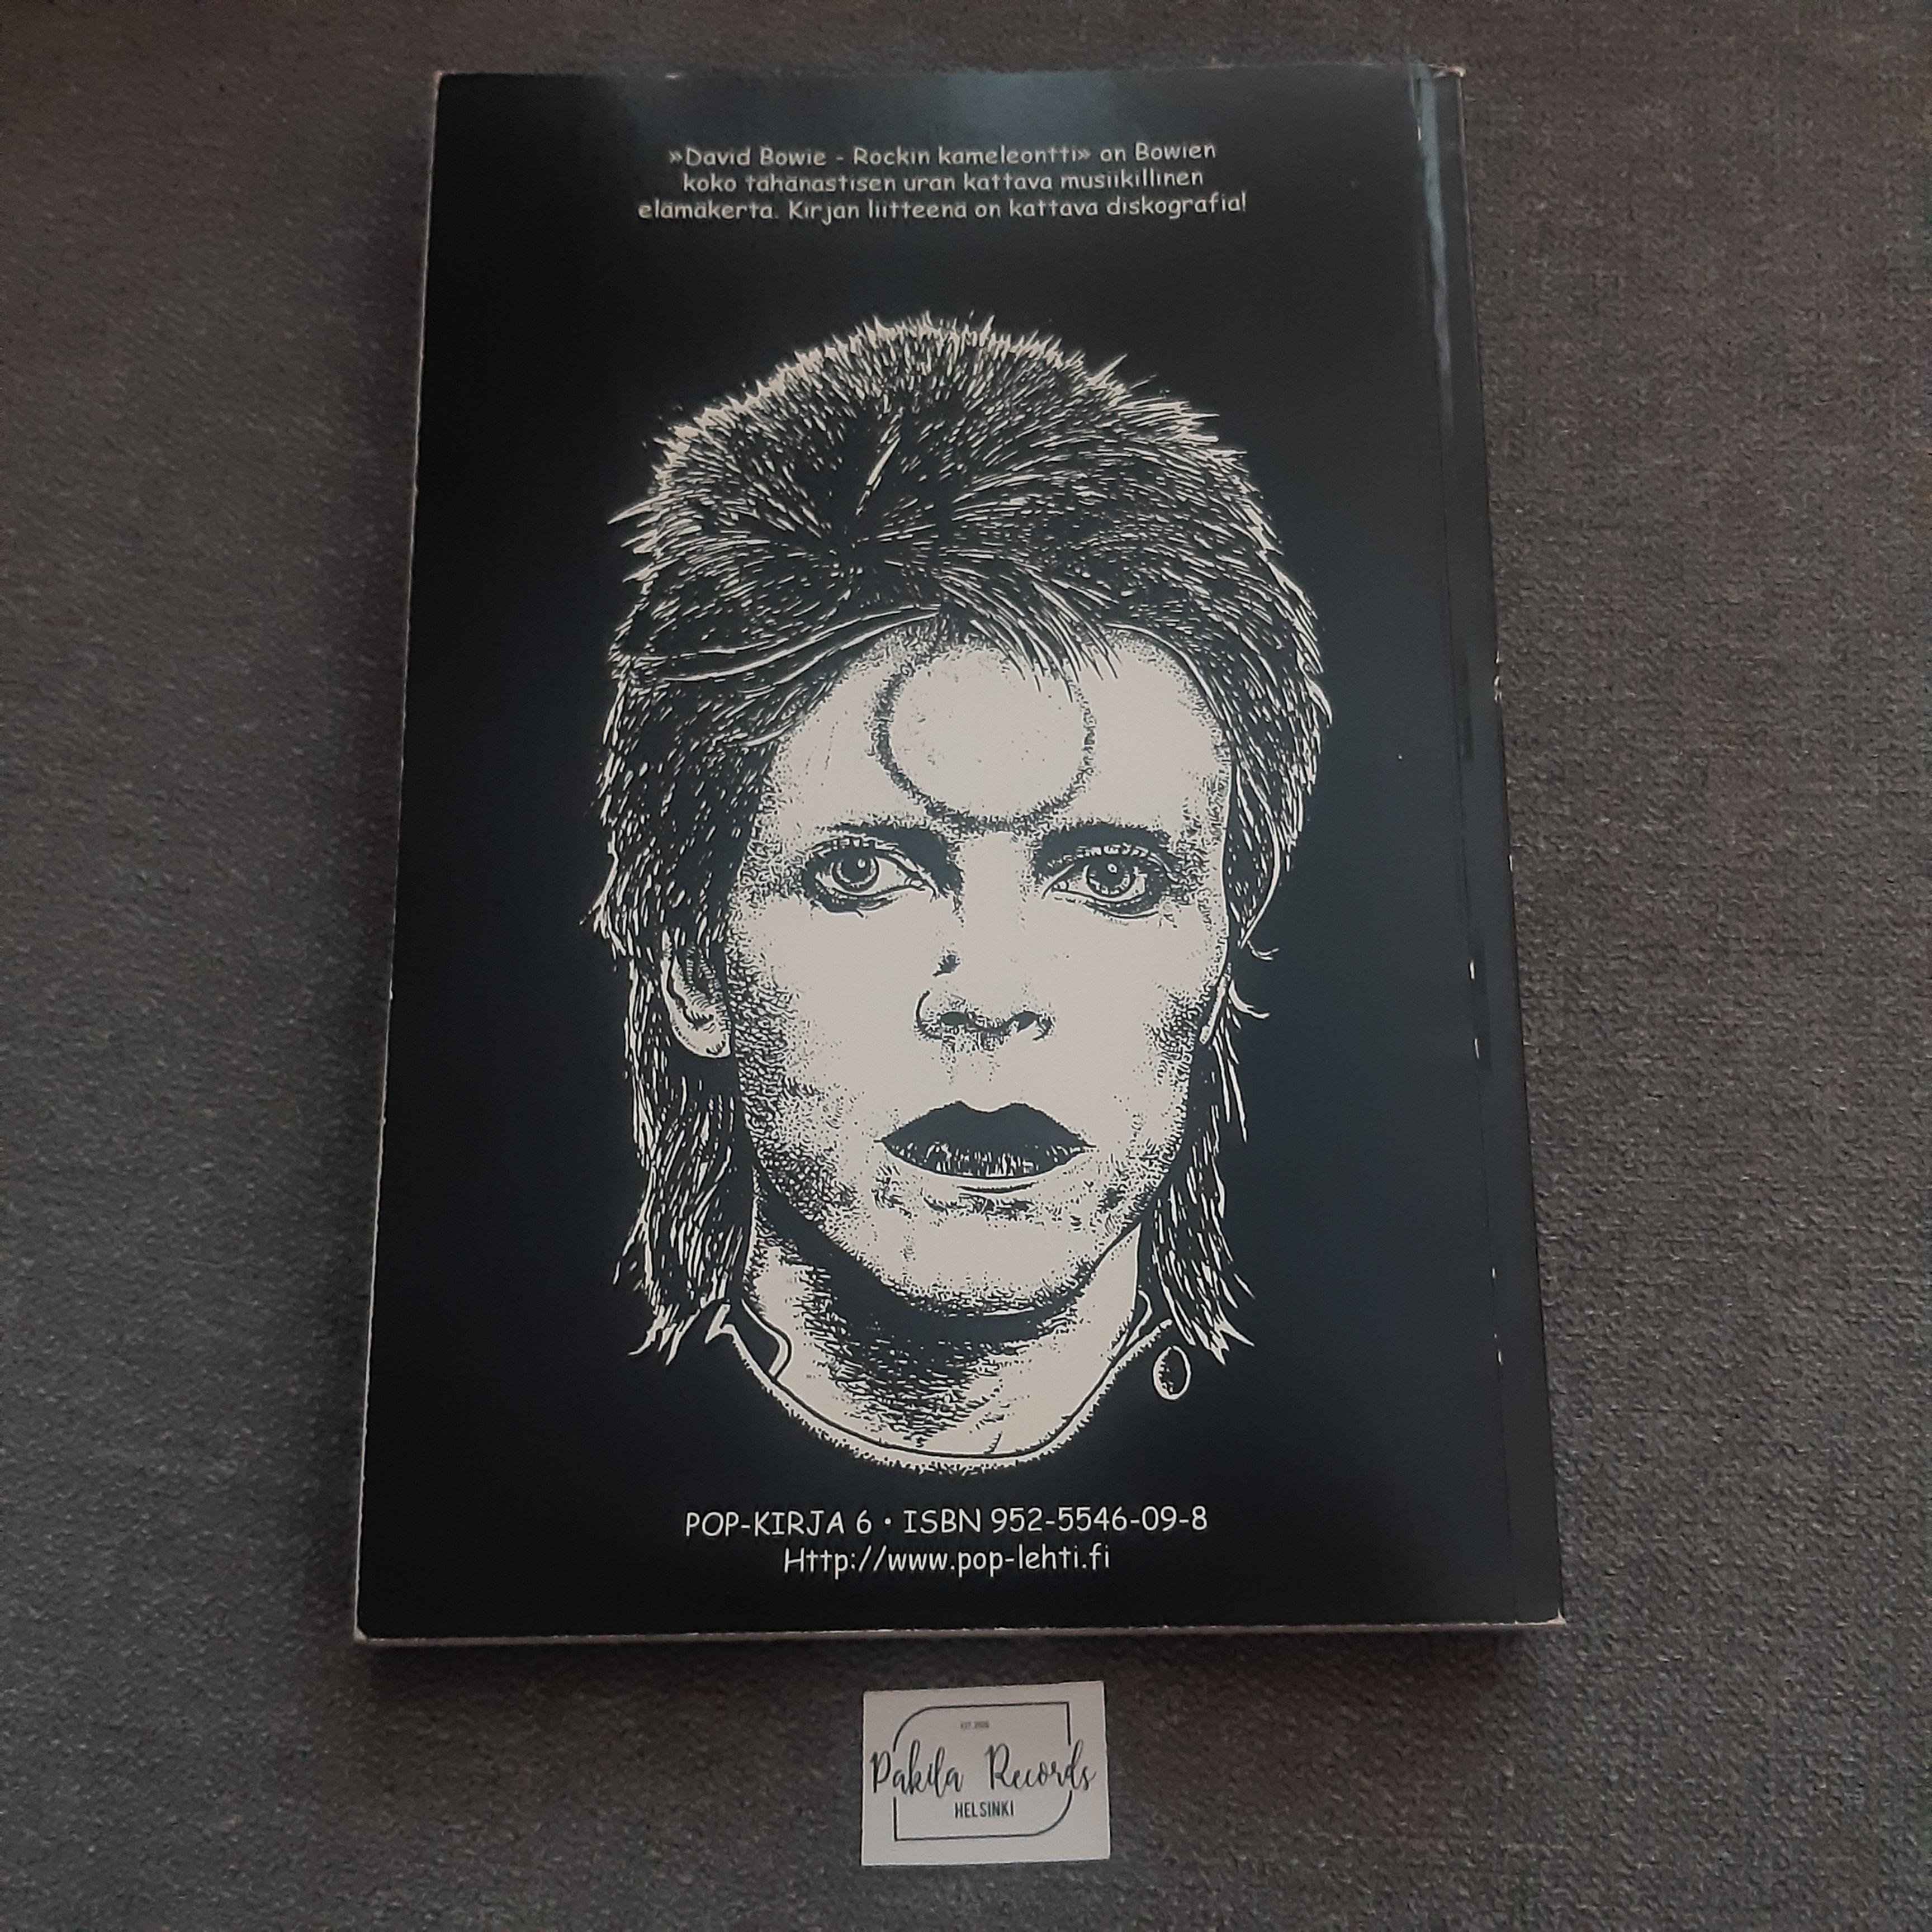 David Bowie,  Rockin kameleontti - Tenho Immonen - Kirja (käytetty)